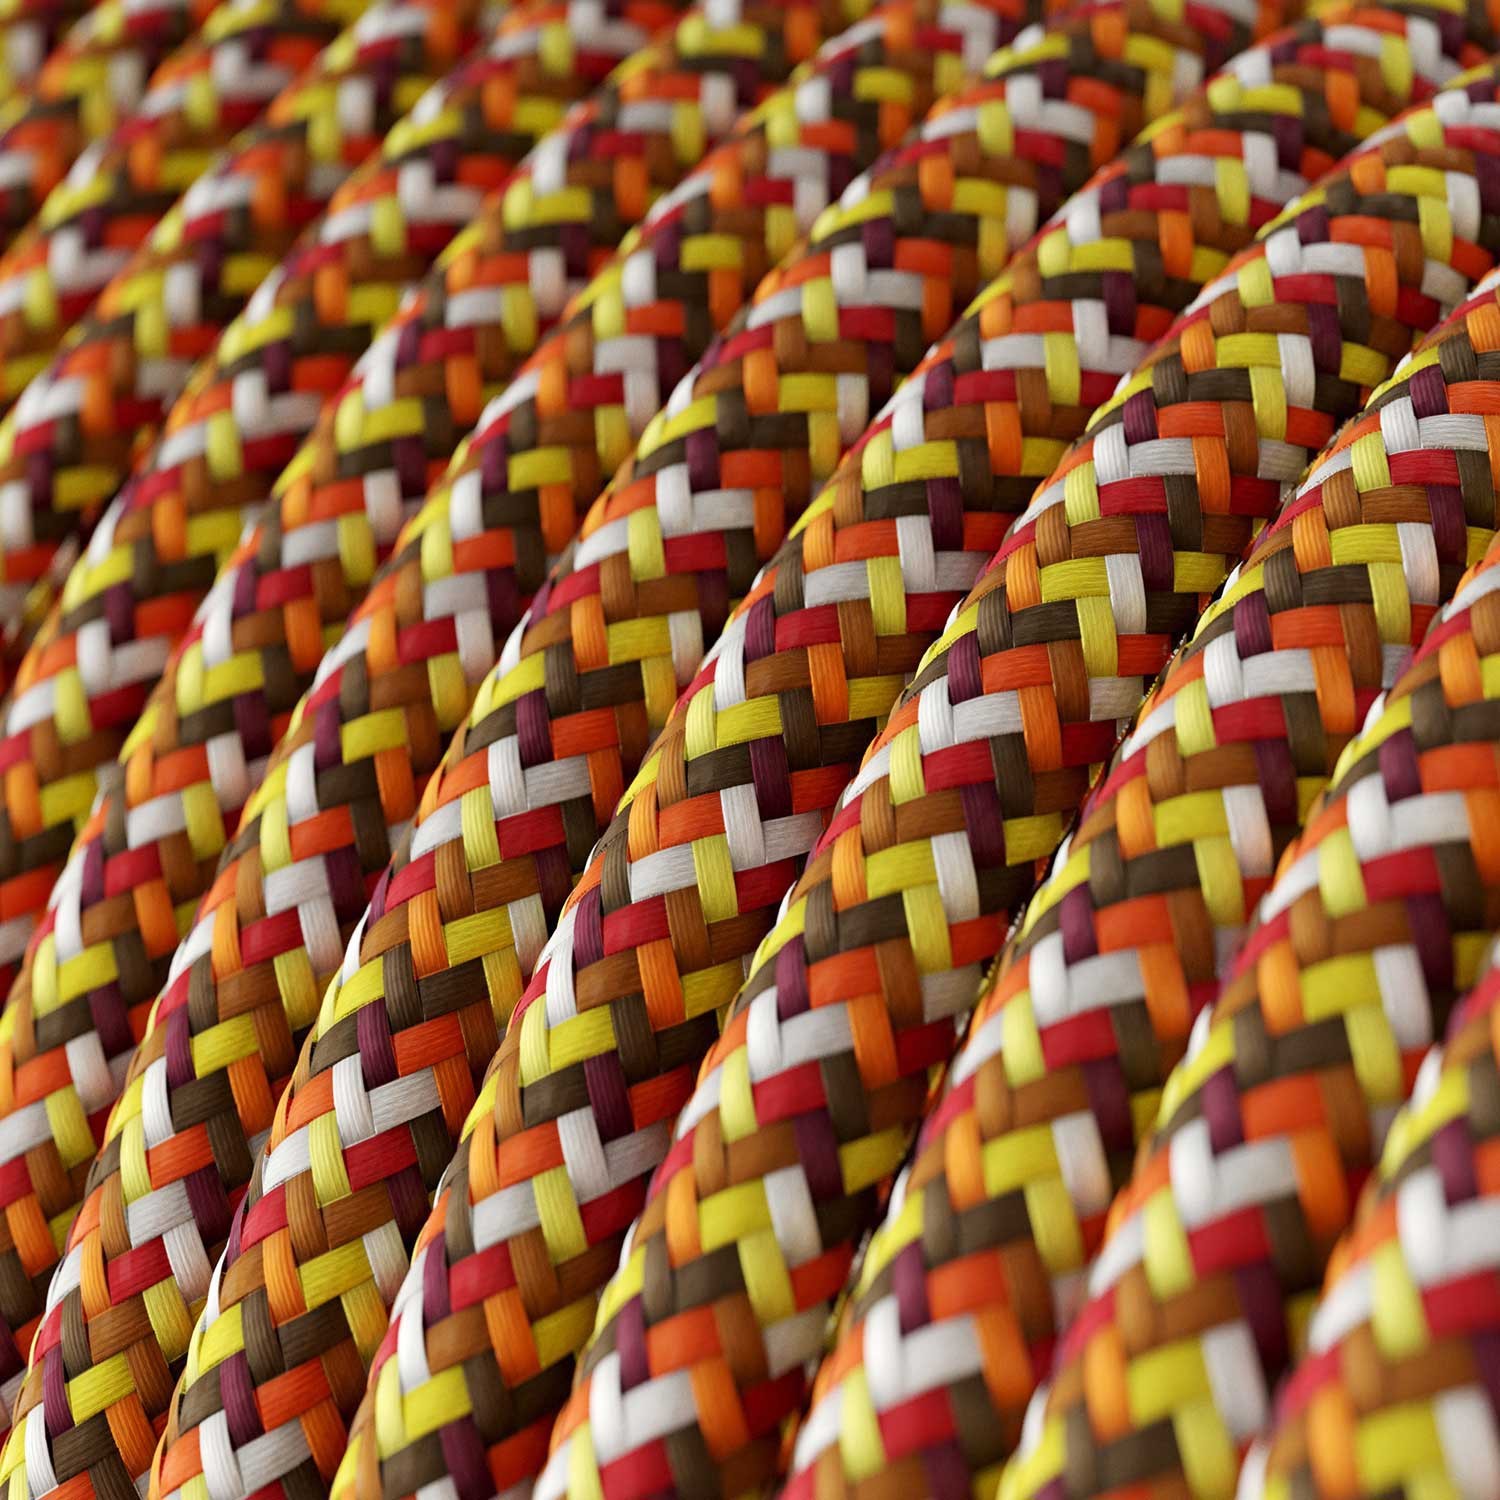 Okrugli tekstilni električni kabel - RX01 - Piksel narančasta